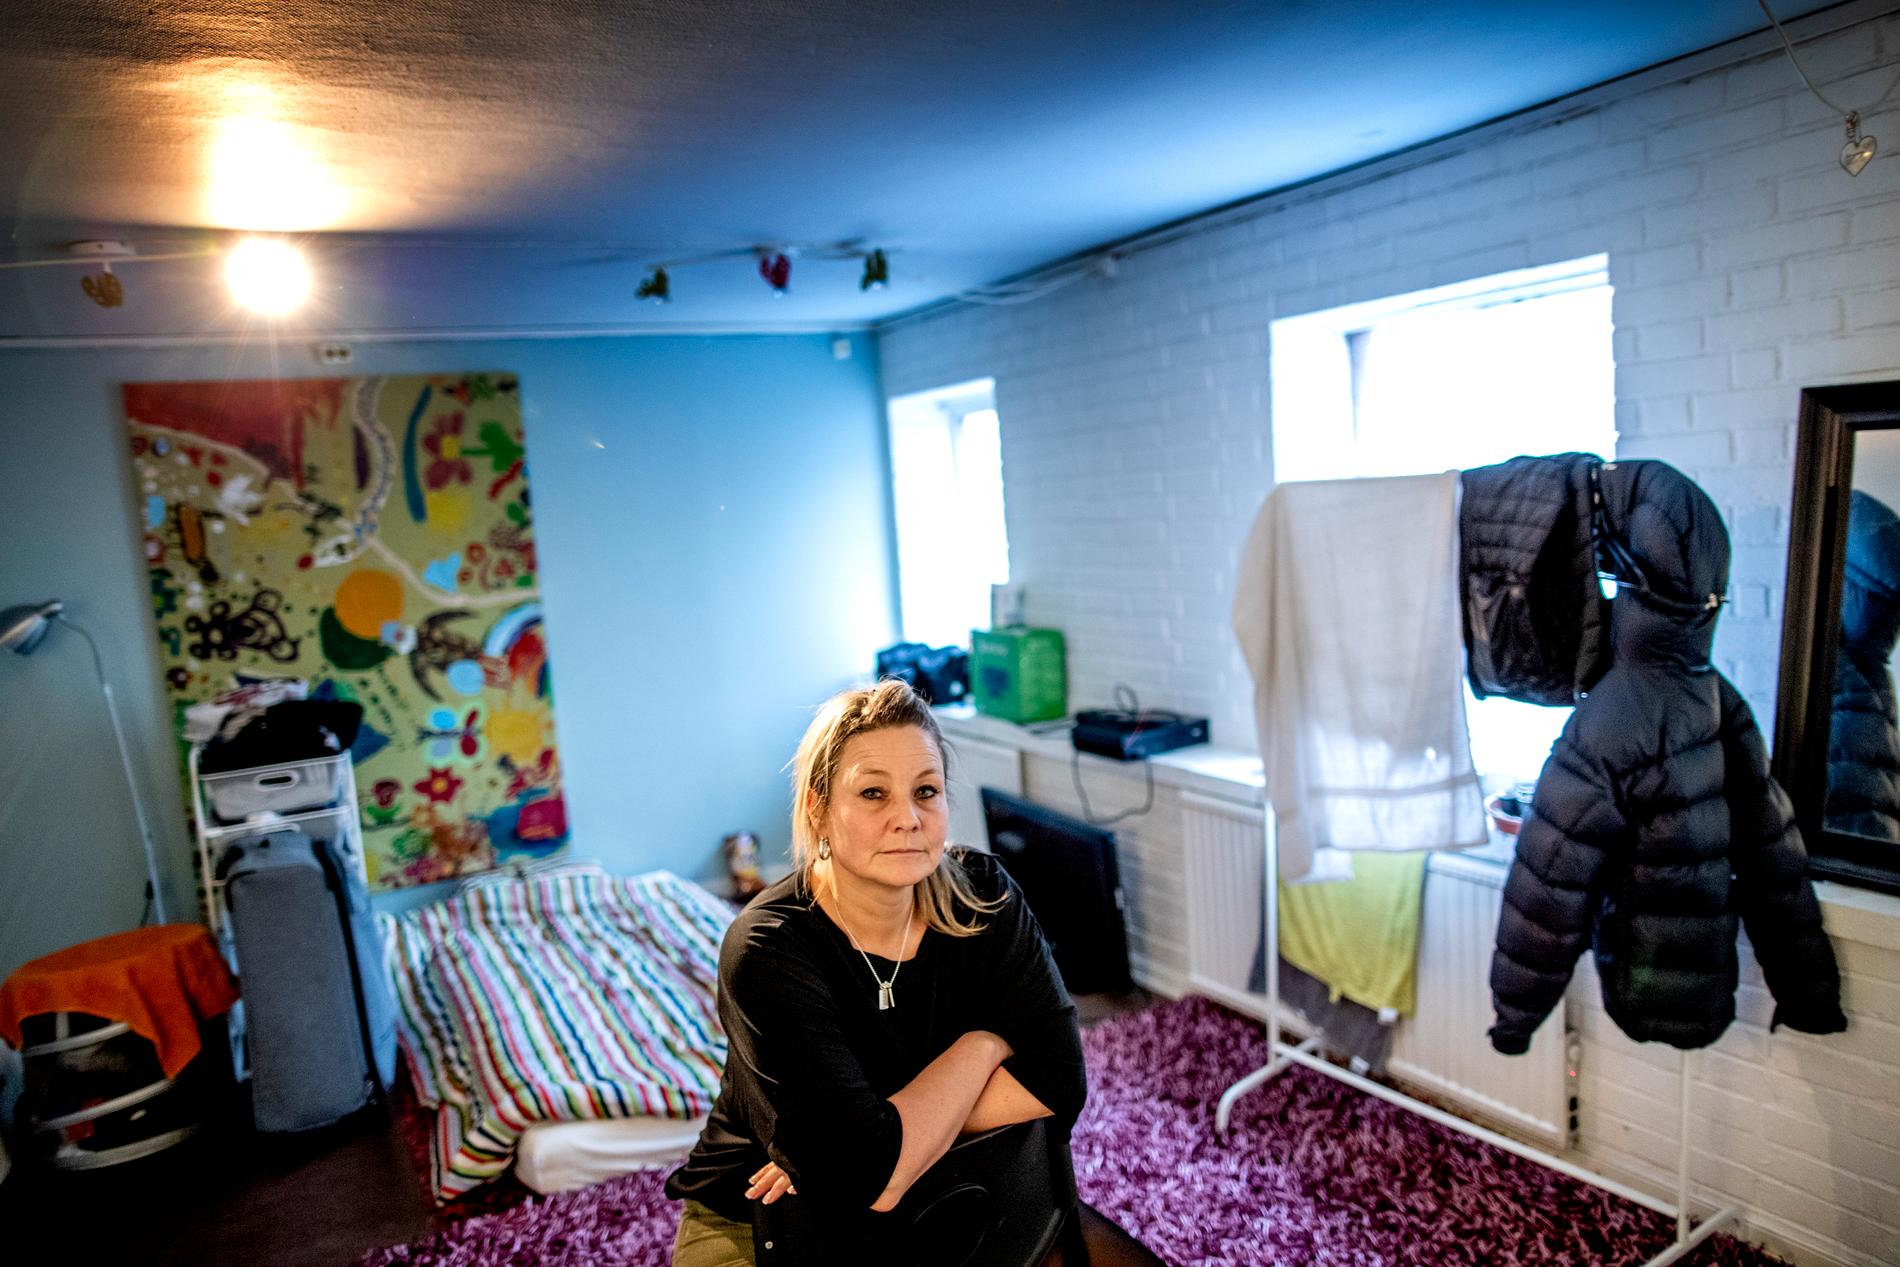 Många ensamkommande som fått avslag på sin asylansökan lämnar inte landet. Matilda Brinck-Larsen, verksamhetsansvarig på frivilligorganisationen Agape som stöttar ensamkommande, befarar att gruppen kommer att växa ytterligare.